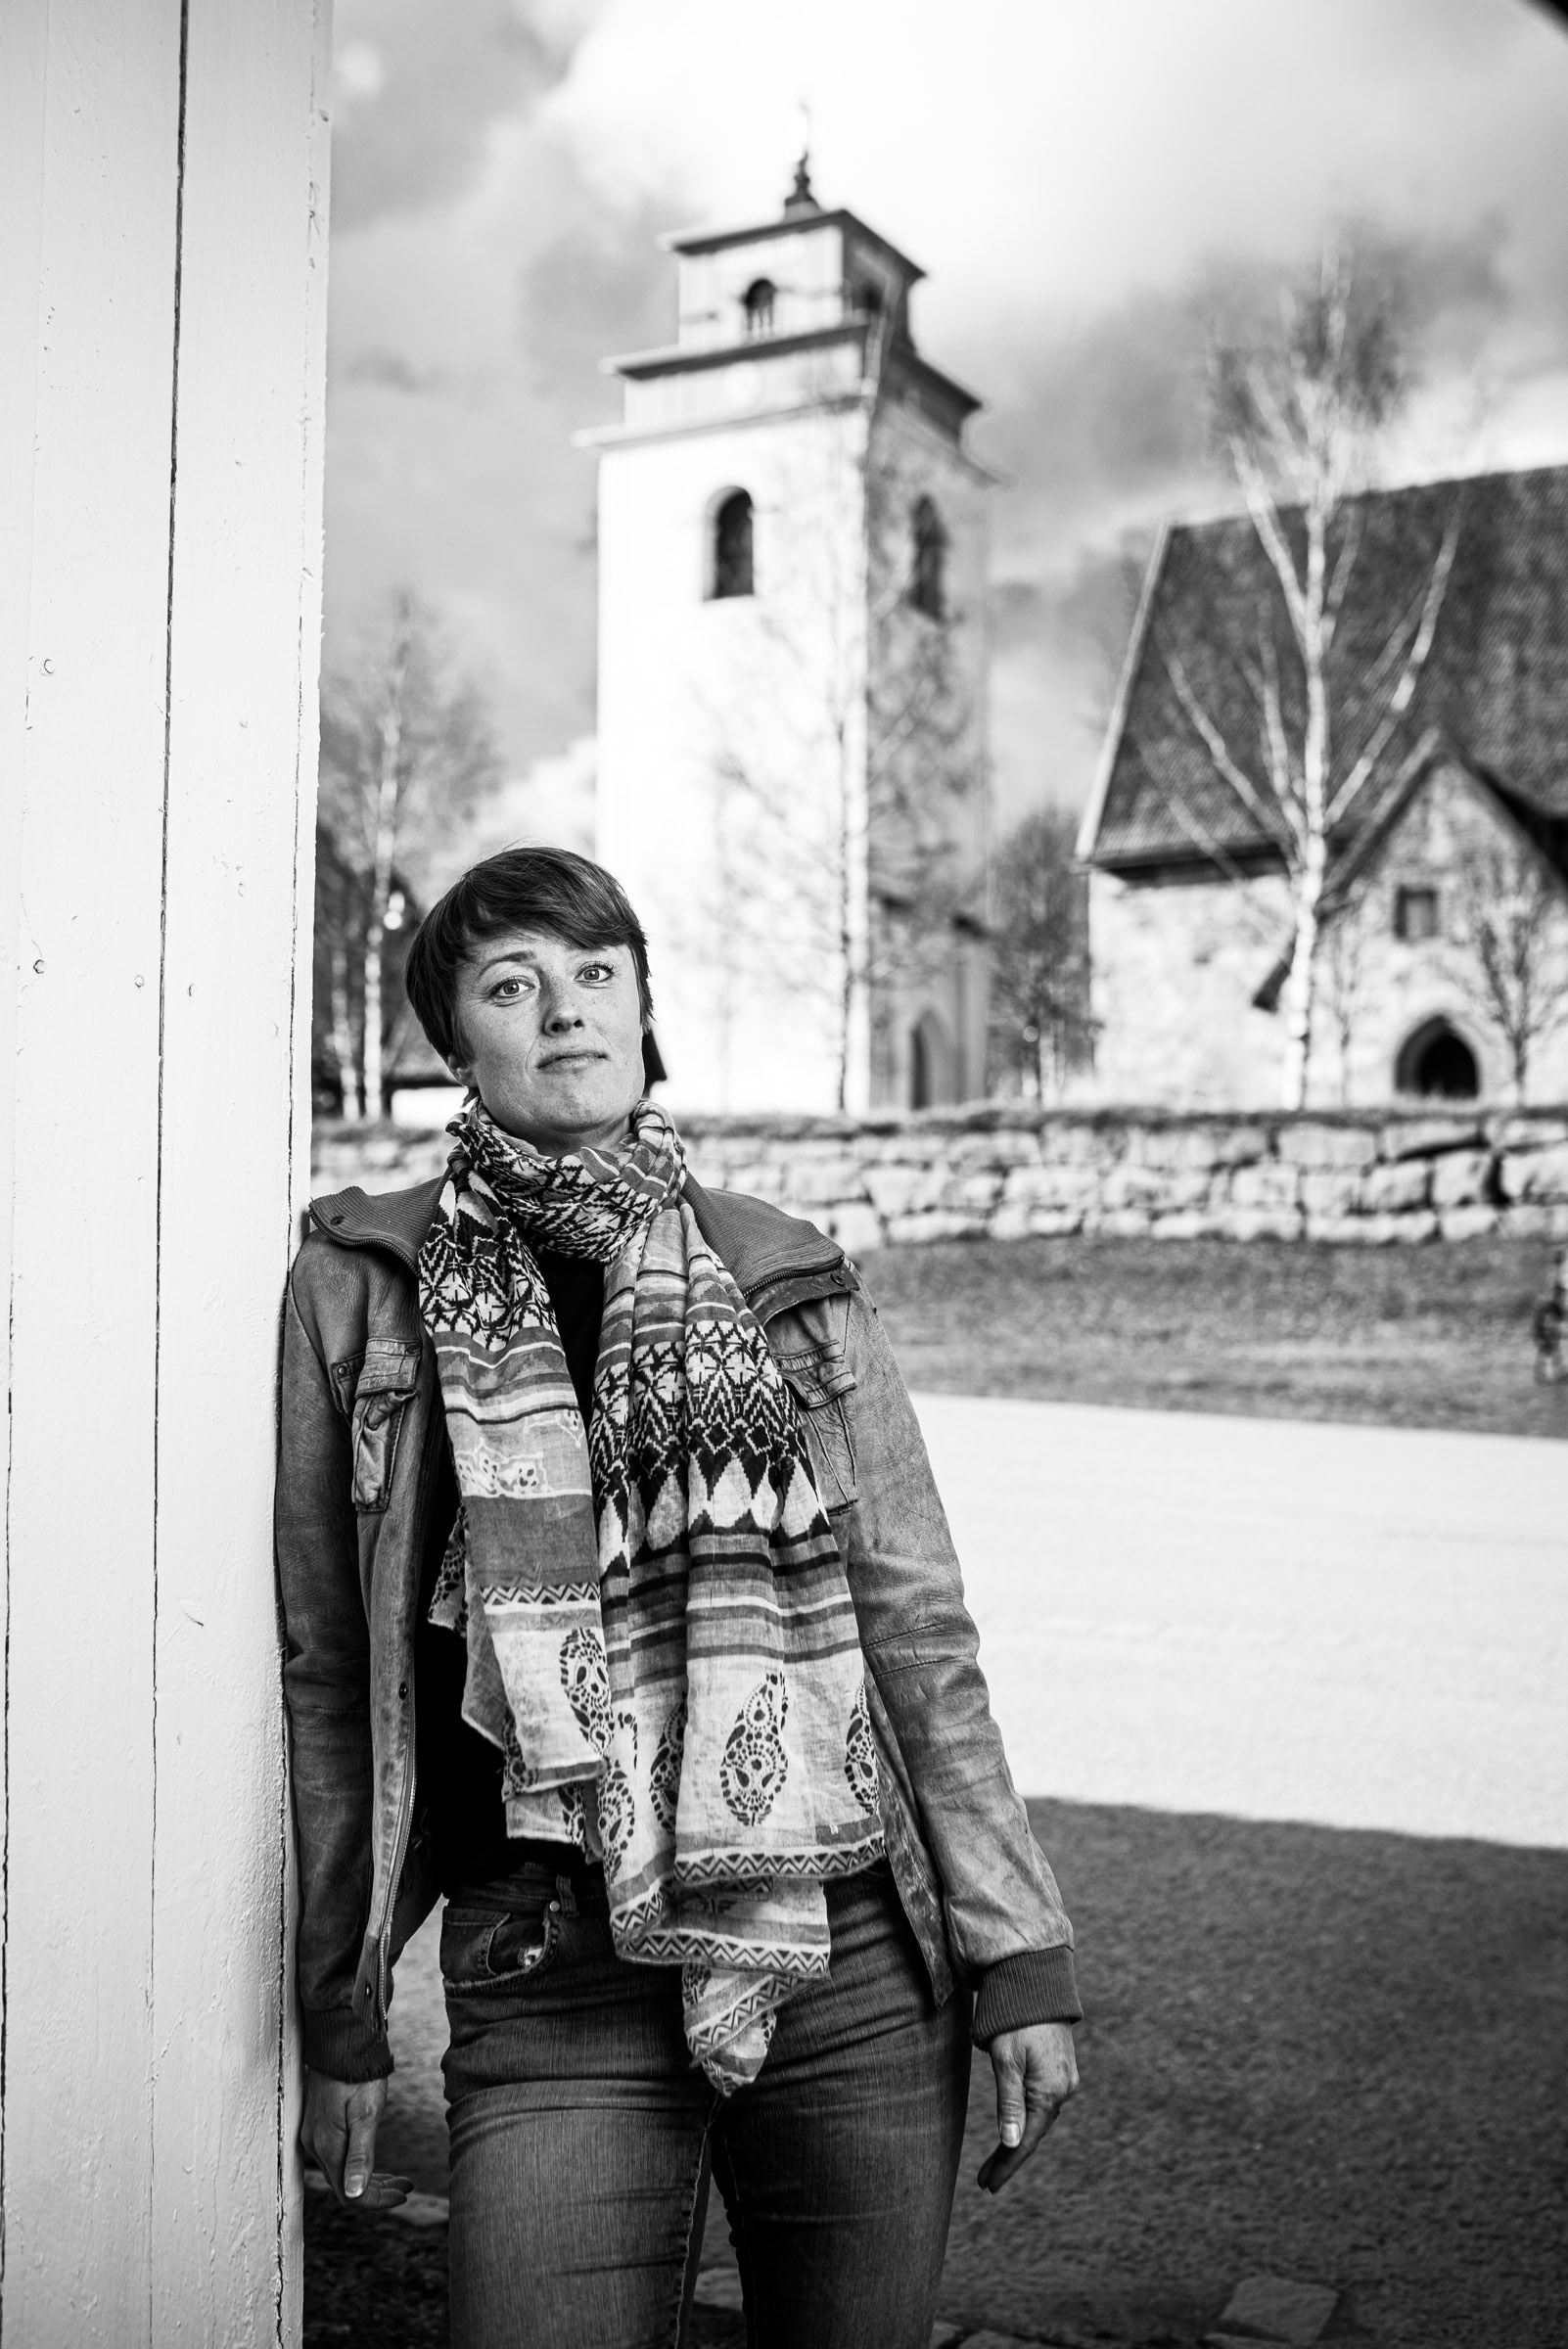 Författaren Sofia Rutbäck Eriksson fotograferad i Kyrkbyn, Gammelstad, Luleå.